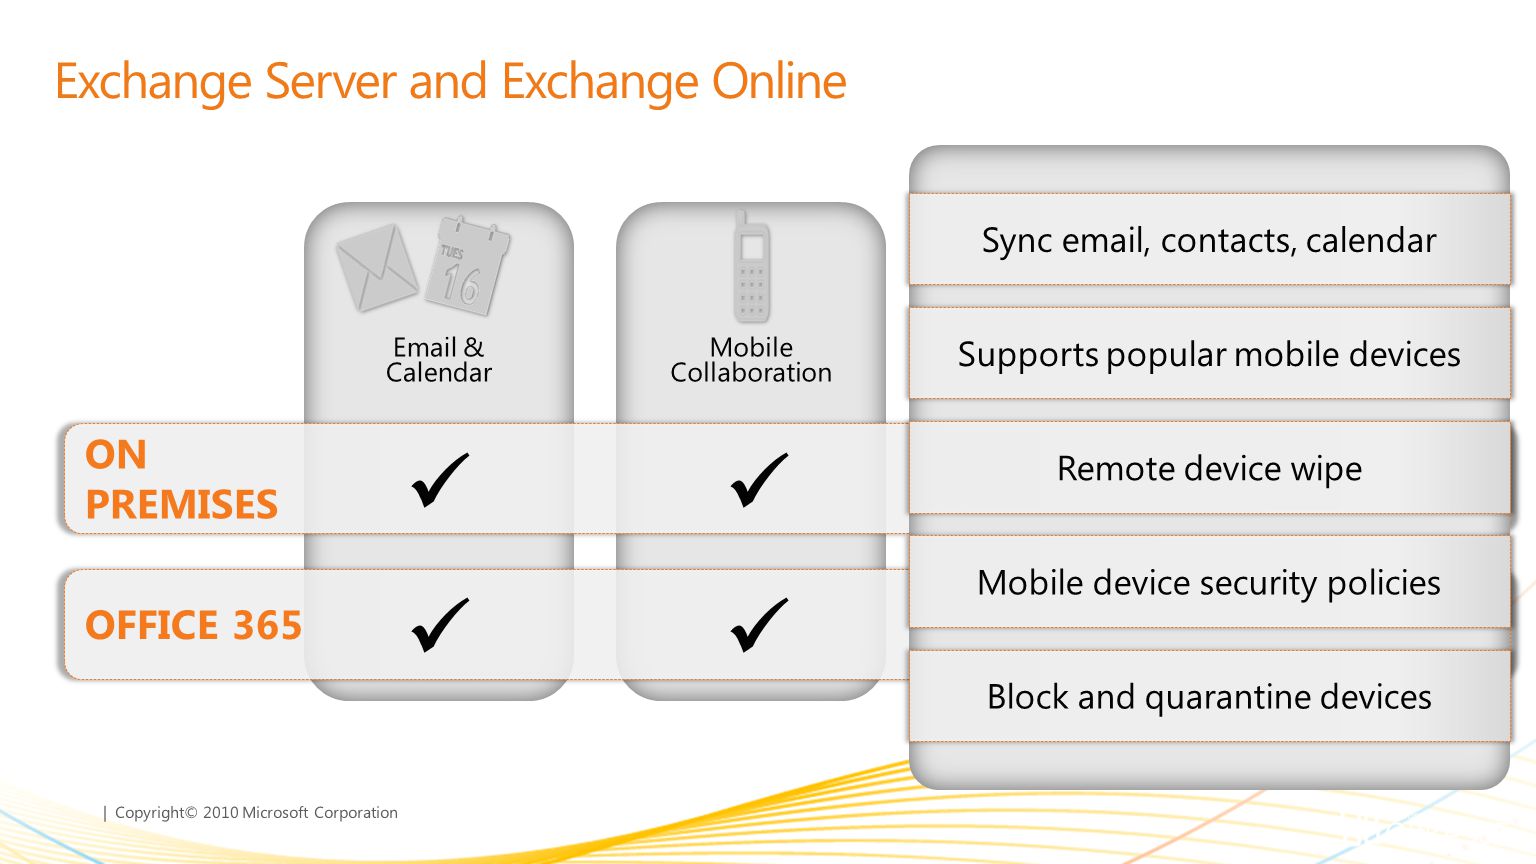 Exchange Server and Exchange Online